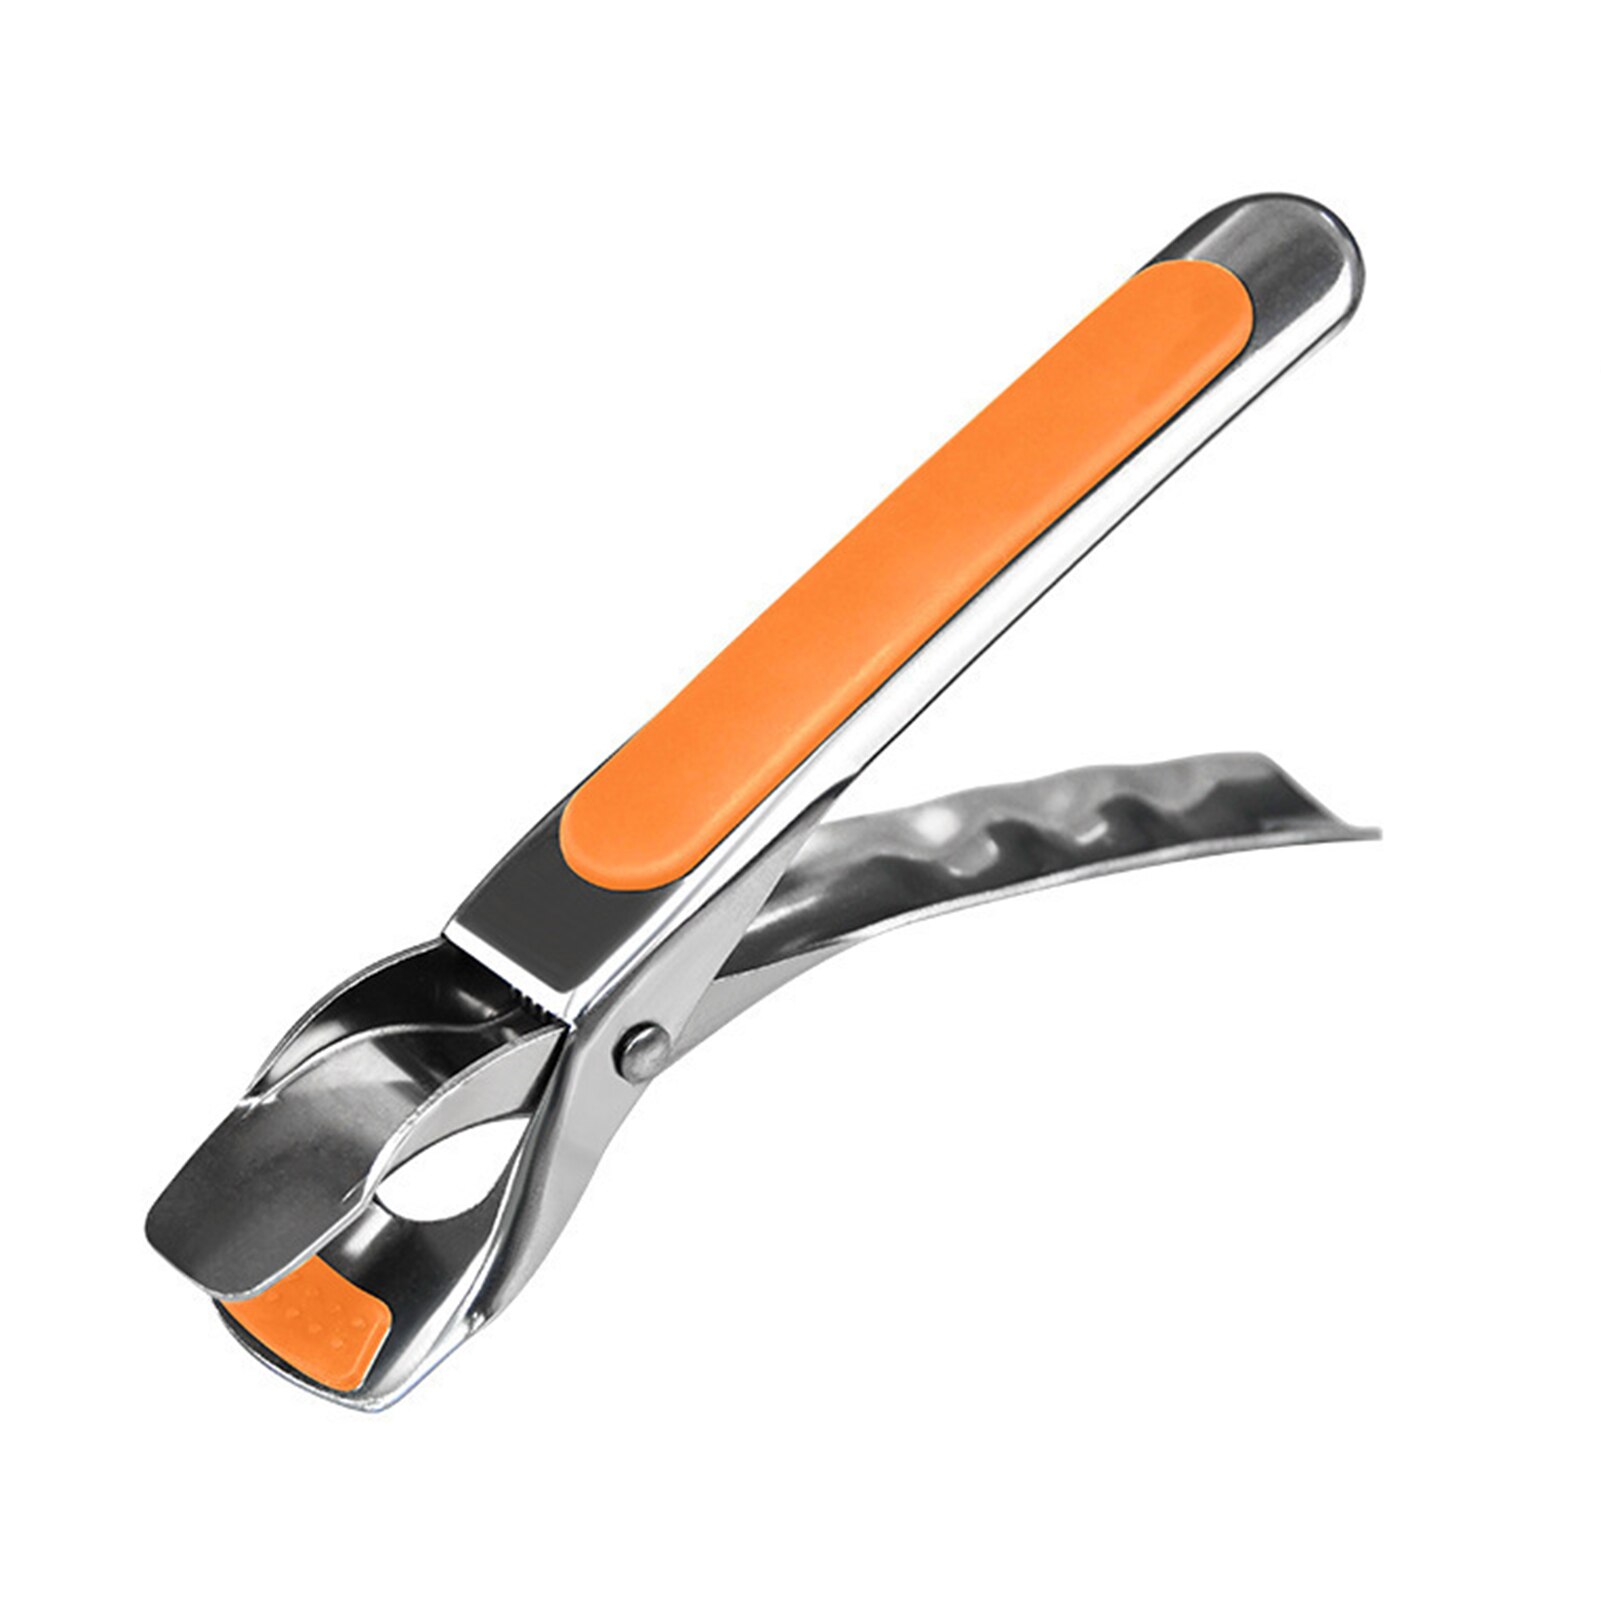 Skridsikker gryde griber klip tallerken skål clip retriever tang silikone håndtag køkken værktøj air friture camping værktøj: Orange griber